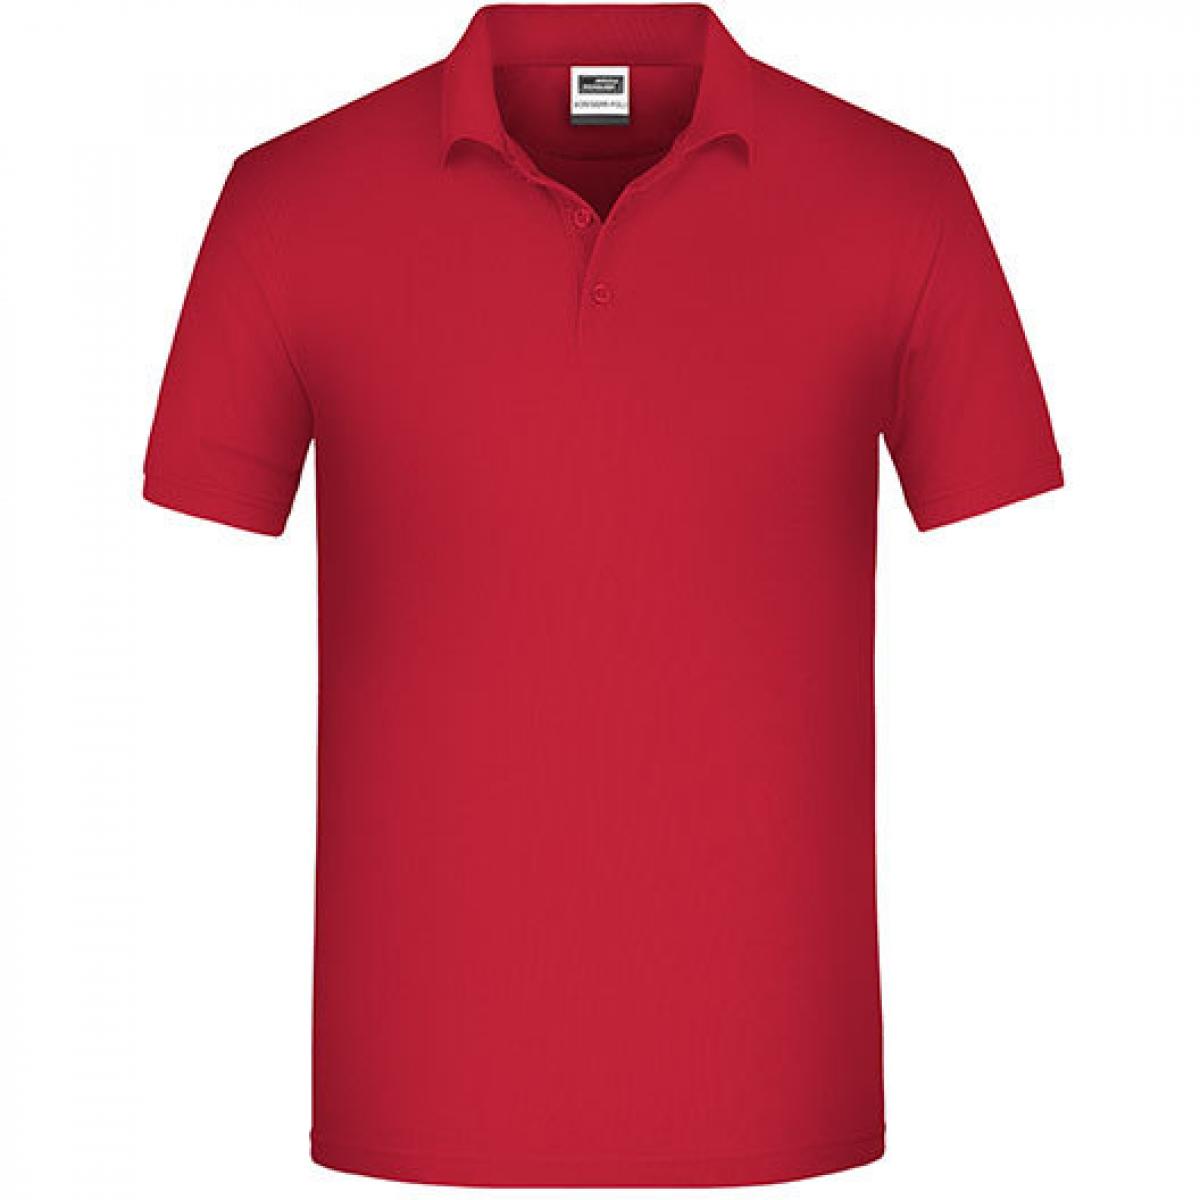 Hersteller: James+Nicholson Herstellernummer: JN874 Artikelbezeichnung: Herren Bio Workwear Polo, Bio-Baumwolle und Polyester Farbe: Red